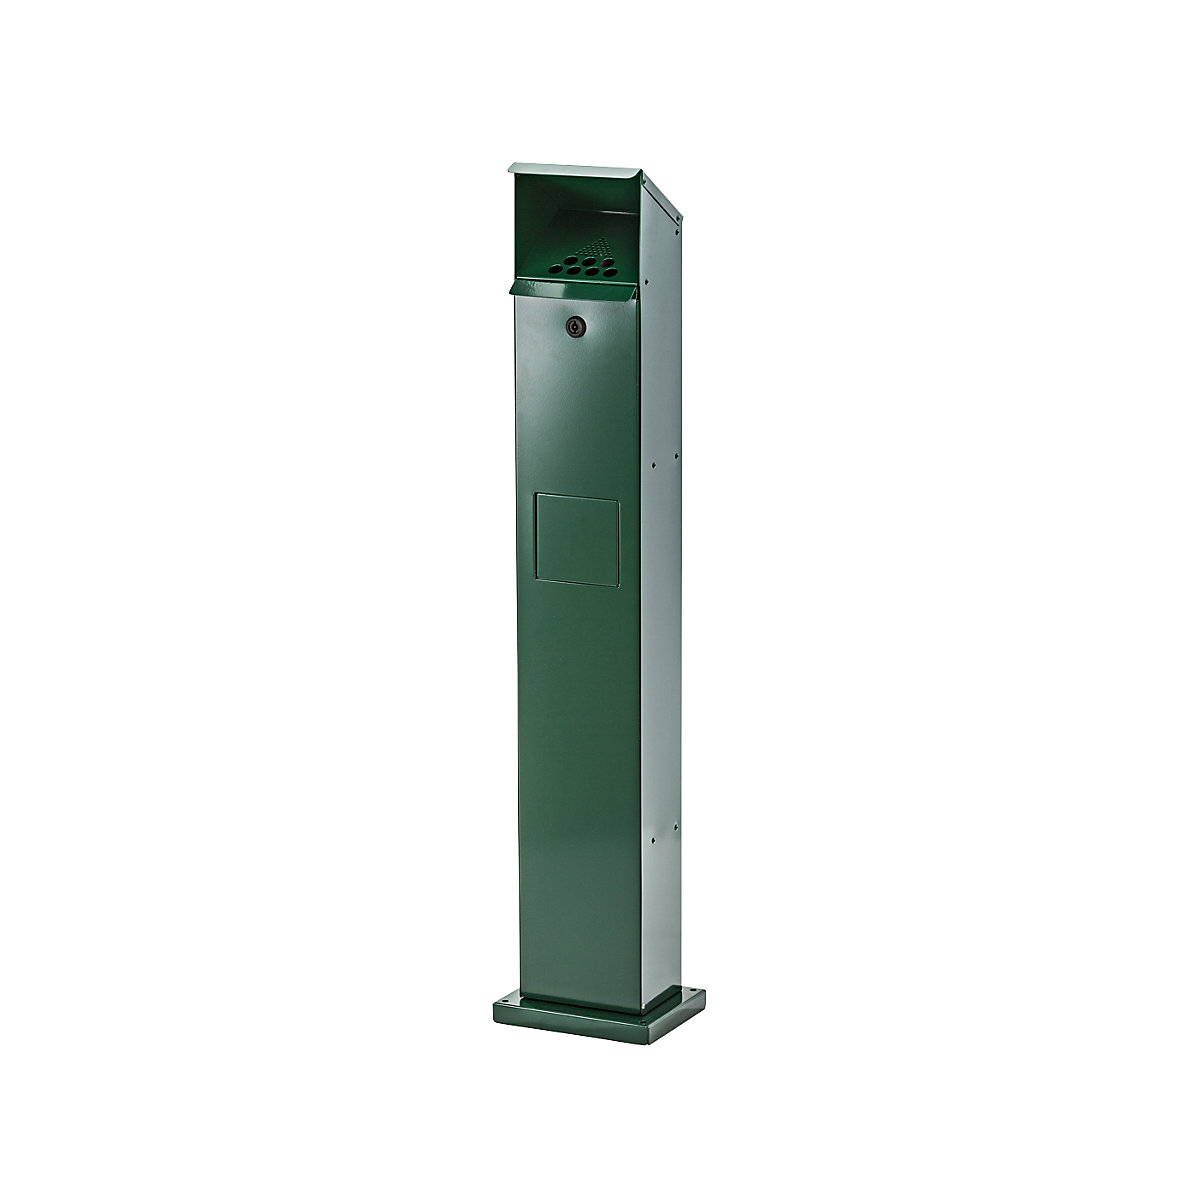 VAR – Kombinovaný sloupkový popelník, objem 5 l, š x v x h 180 x 1150 x 150 mm, pozinkovaný ocelový plech s práškovým vypalovaným lakem, mechově zelená